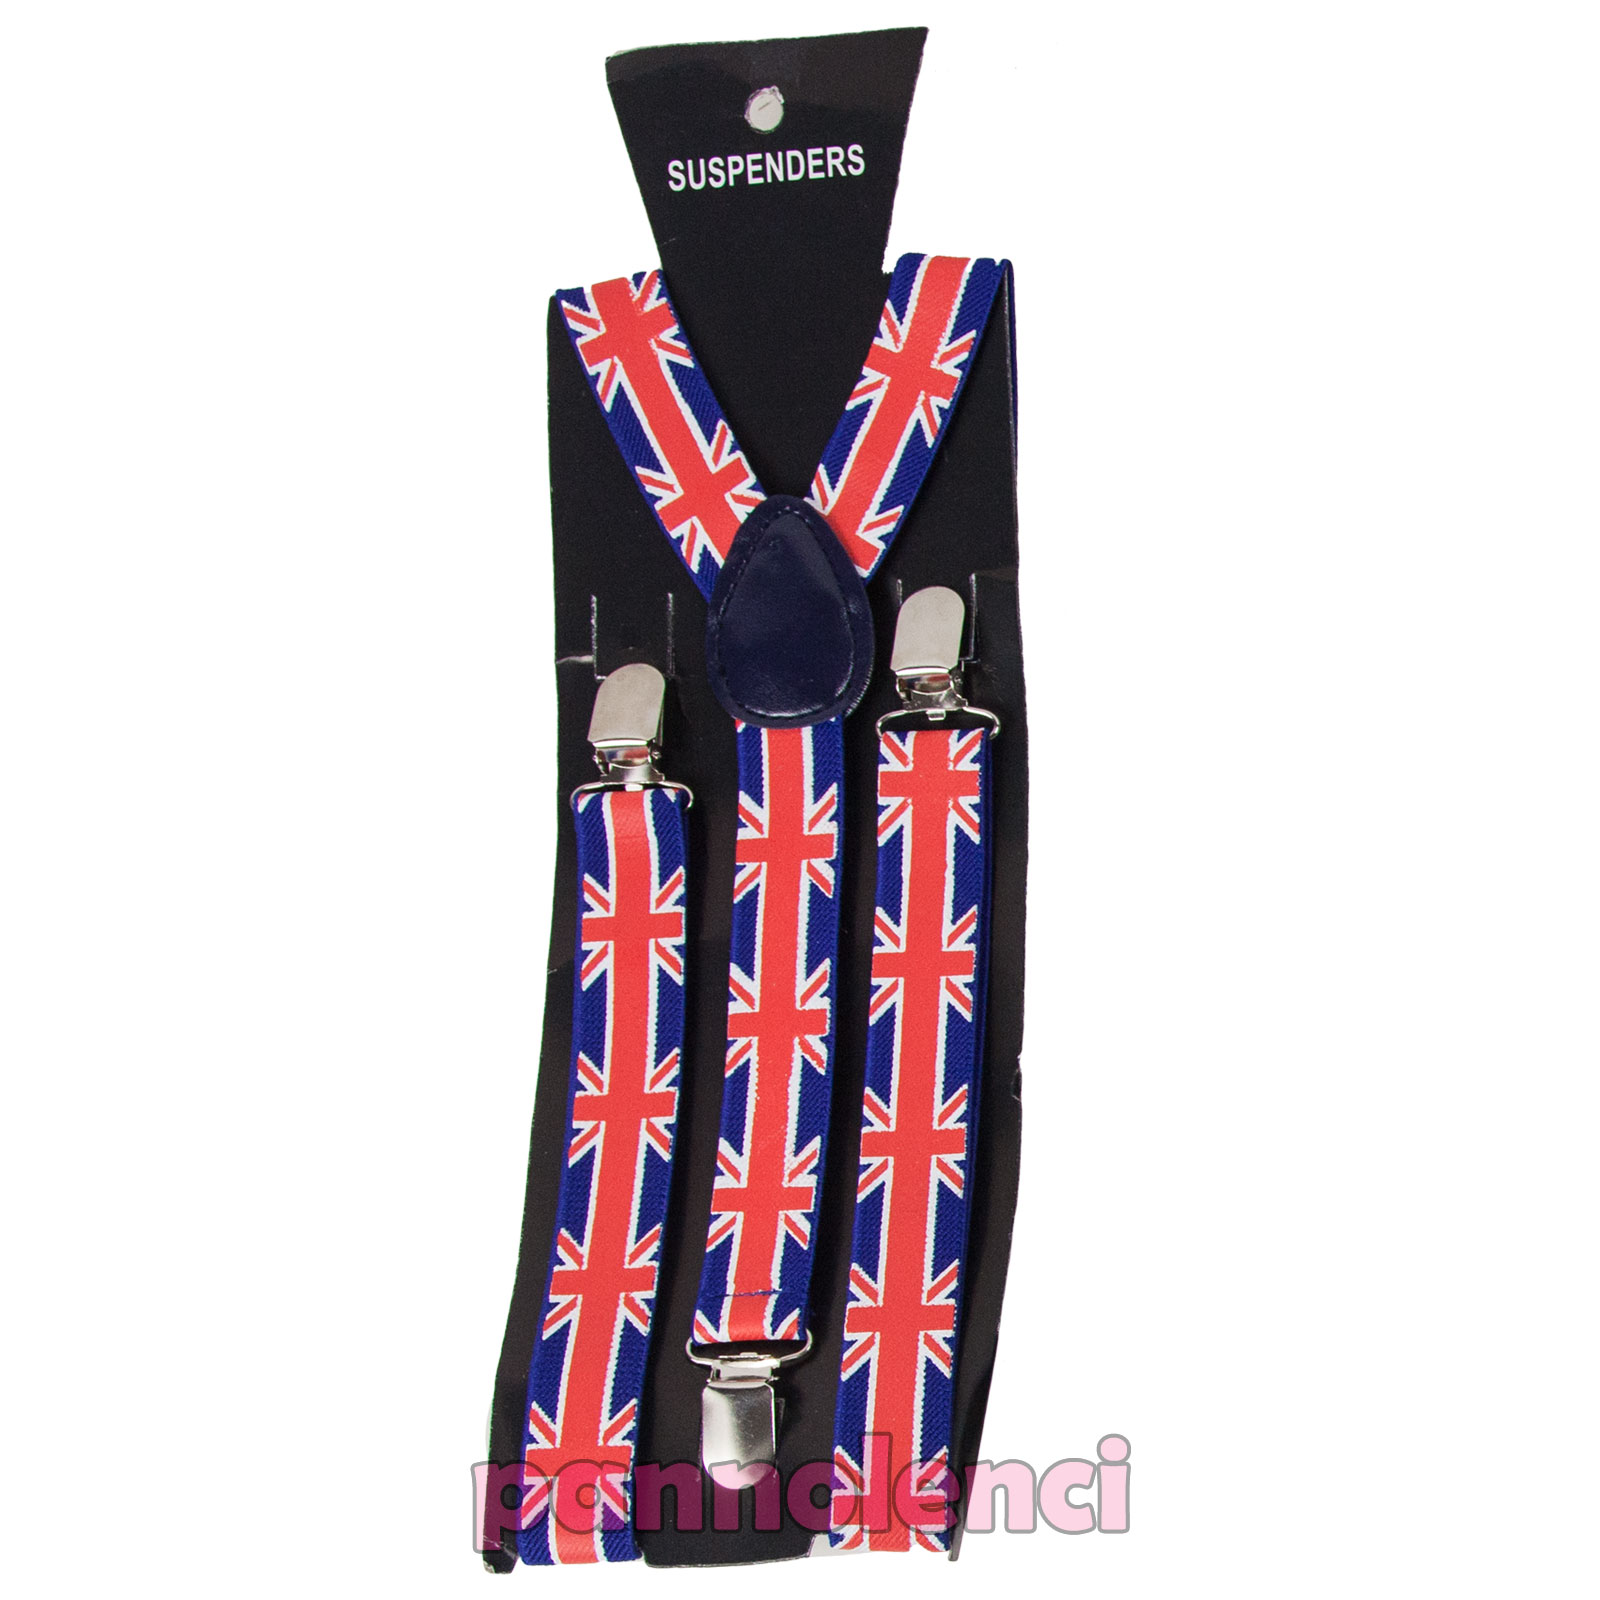 Bretelle donna uomo straccali suspenders regolabili elastiche ballo danza BR-01 Toocool 